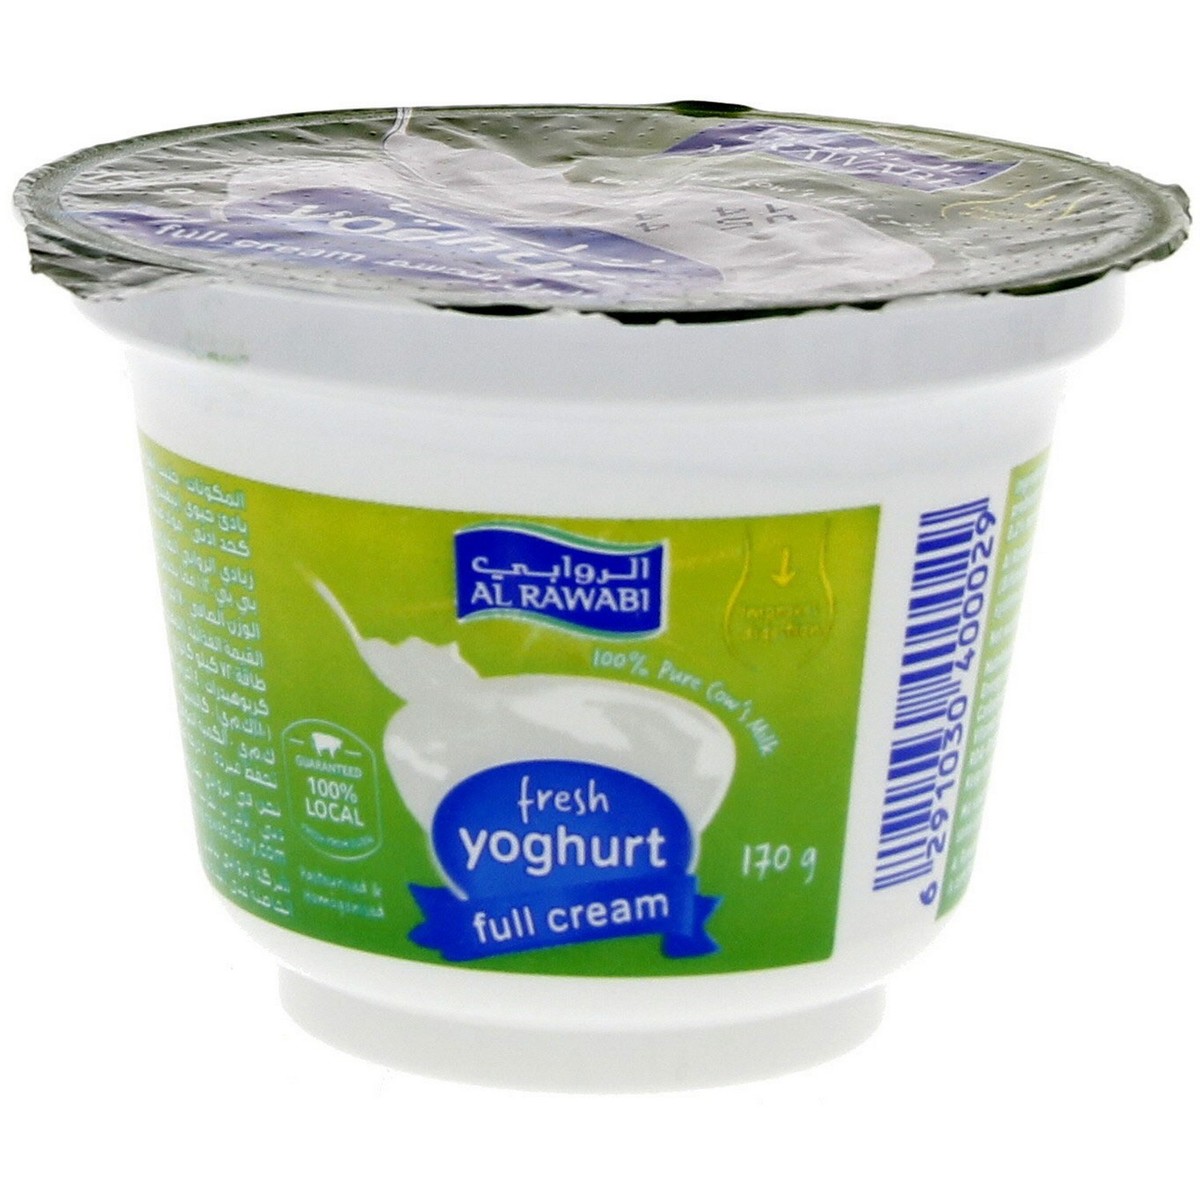 اشتري قم بشراء الروابي زبادي طازج كامل الدسم 170جم Online at Best Price من الموقع - من لولو هايبر ماركت Plain Yoghurt في الامارات